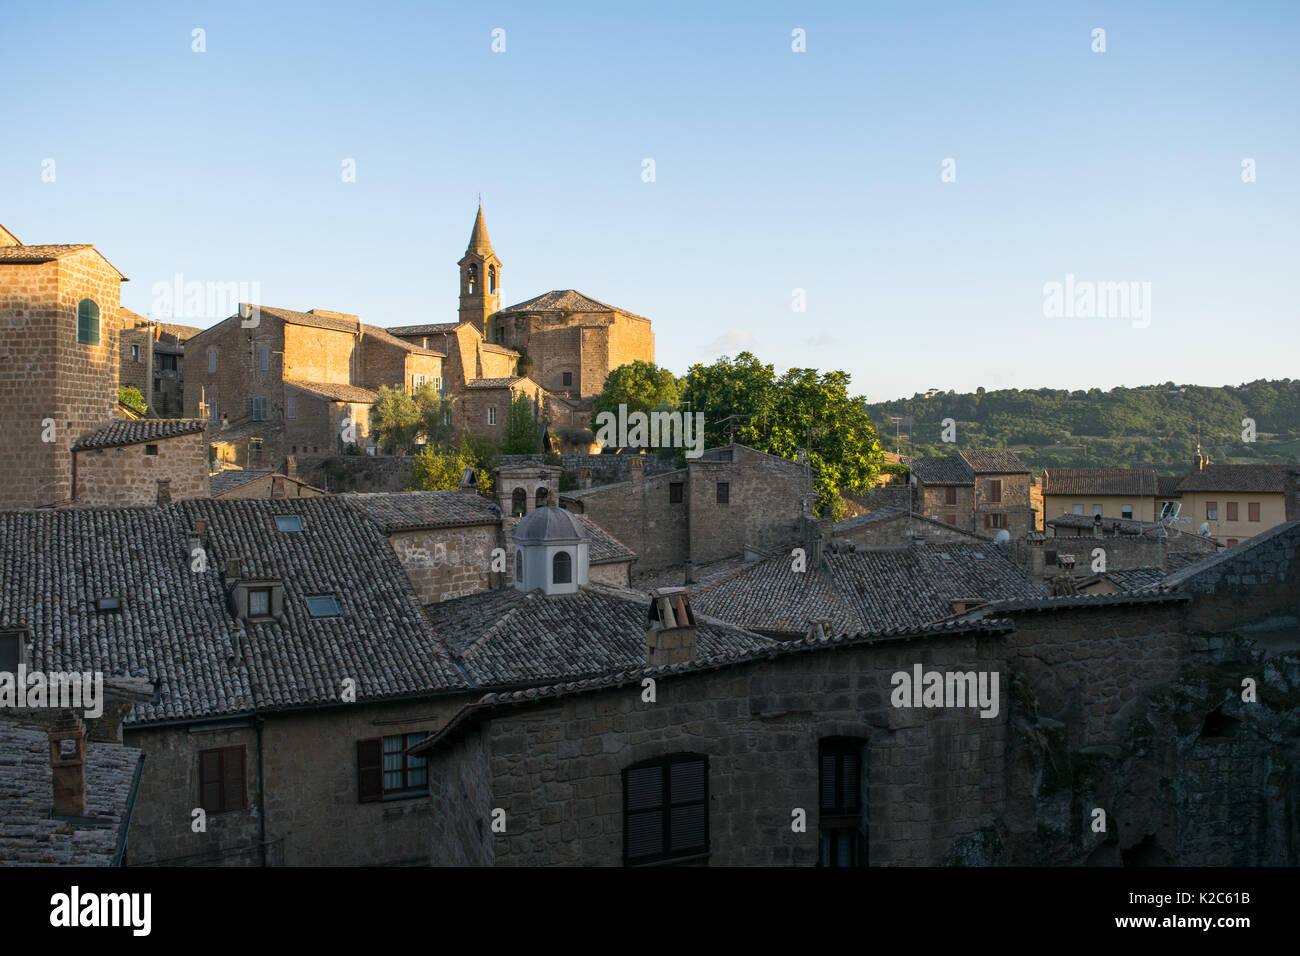 Gli edifici della casa e un prominente chiesa e torre campanaria a Orvieto Città Vecchia, Italia centrale, regione Umbria. La città mantiene un vecchio carattere medievale Foto Stock